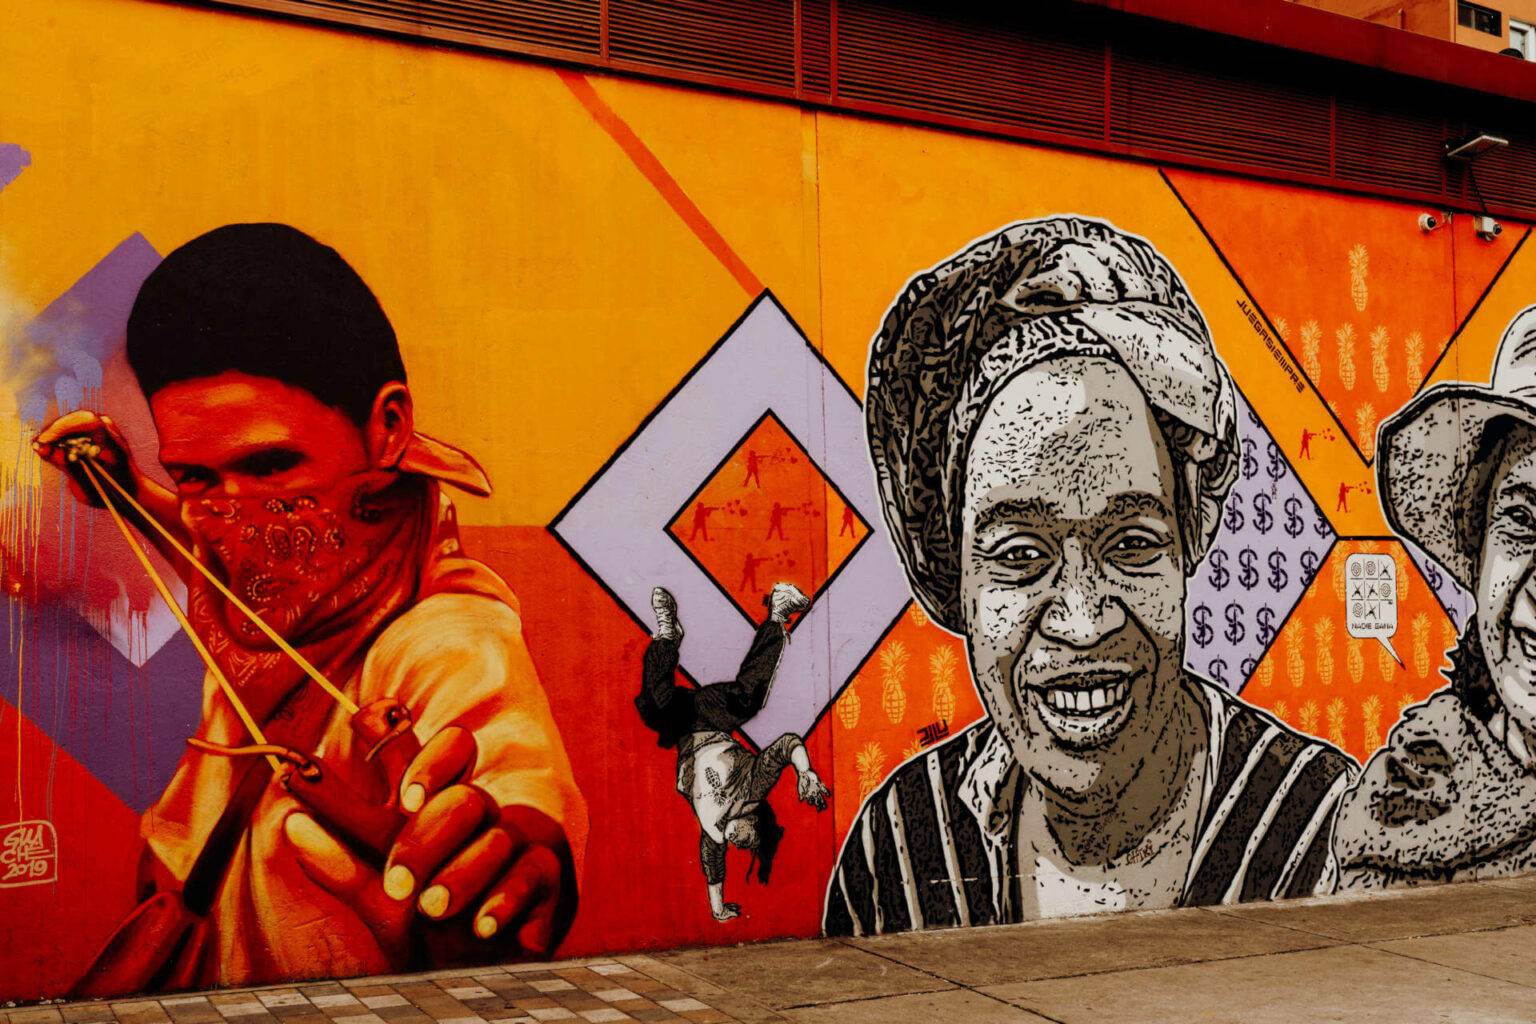 Bei der Bogotá Graffiti Tour erfährt man viel über die indigenen Völker Kolumbiens.